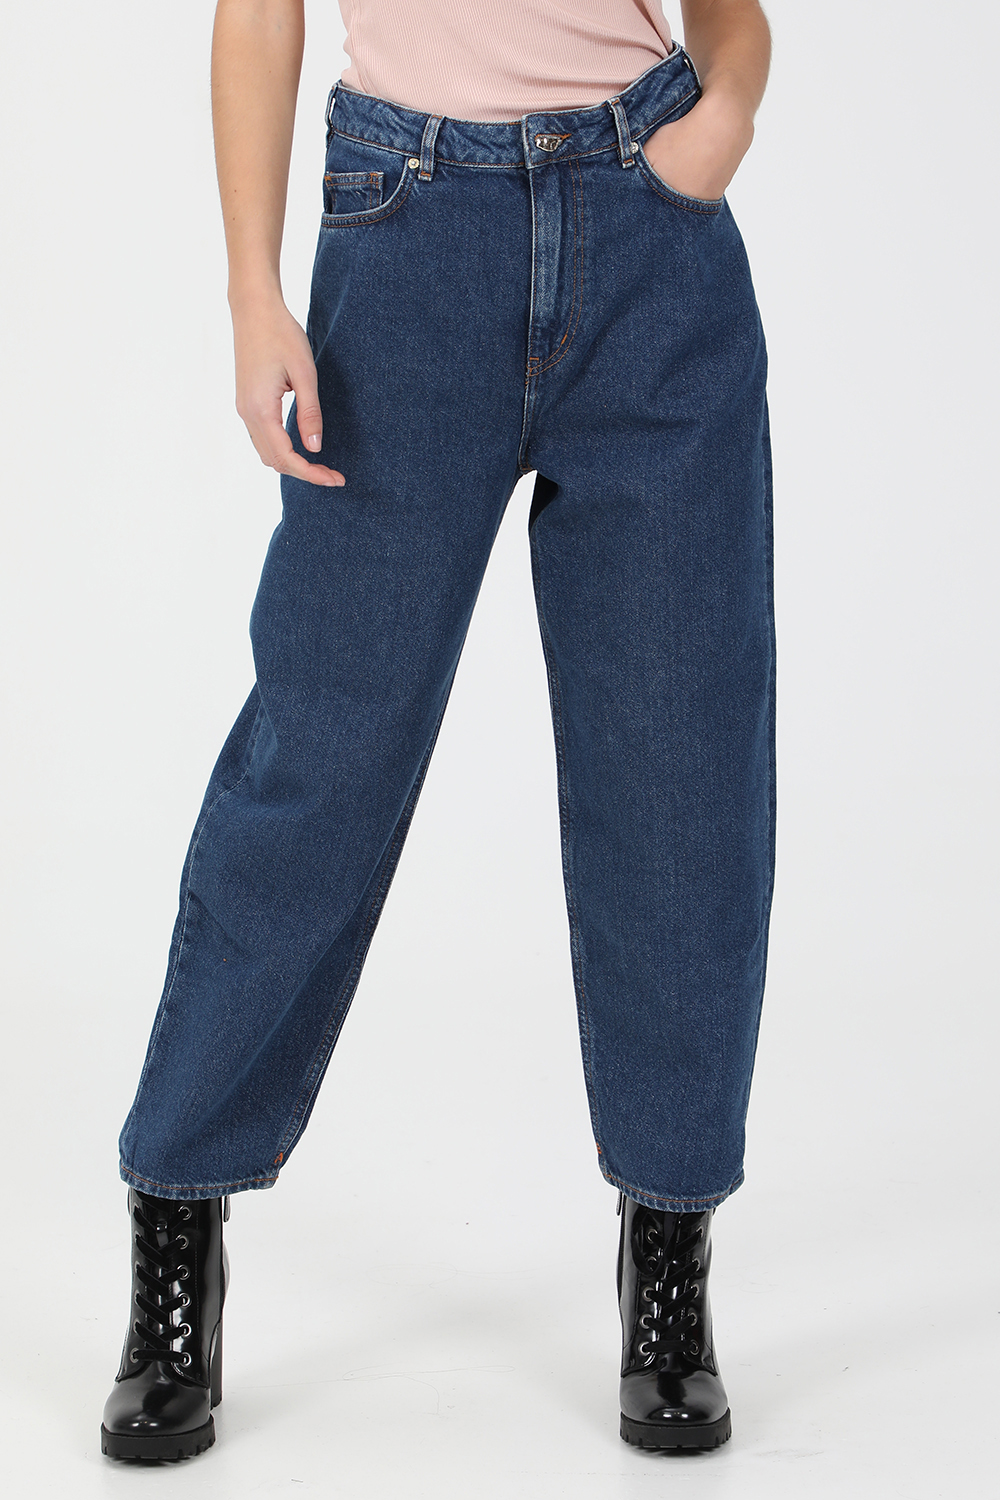 Γυναικεία/Ρούχα/Παντελόνια/Jean SCOTCH & SODA - Γυναικείο jean παντελόνι SCOTCH & SODA μπλε